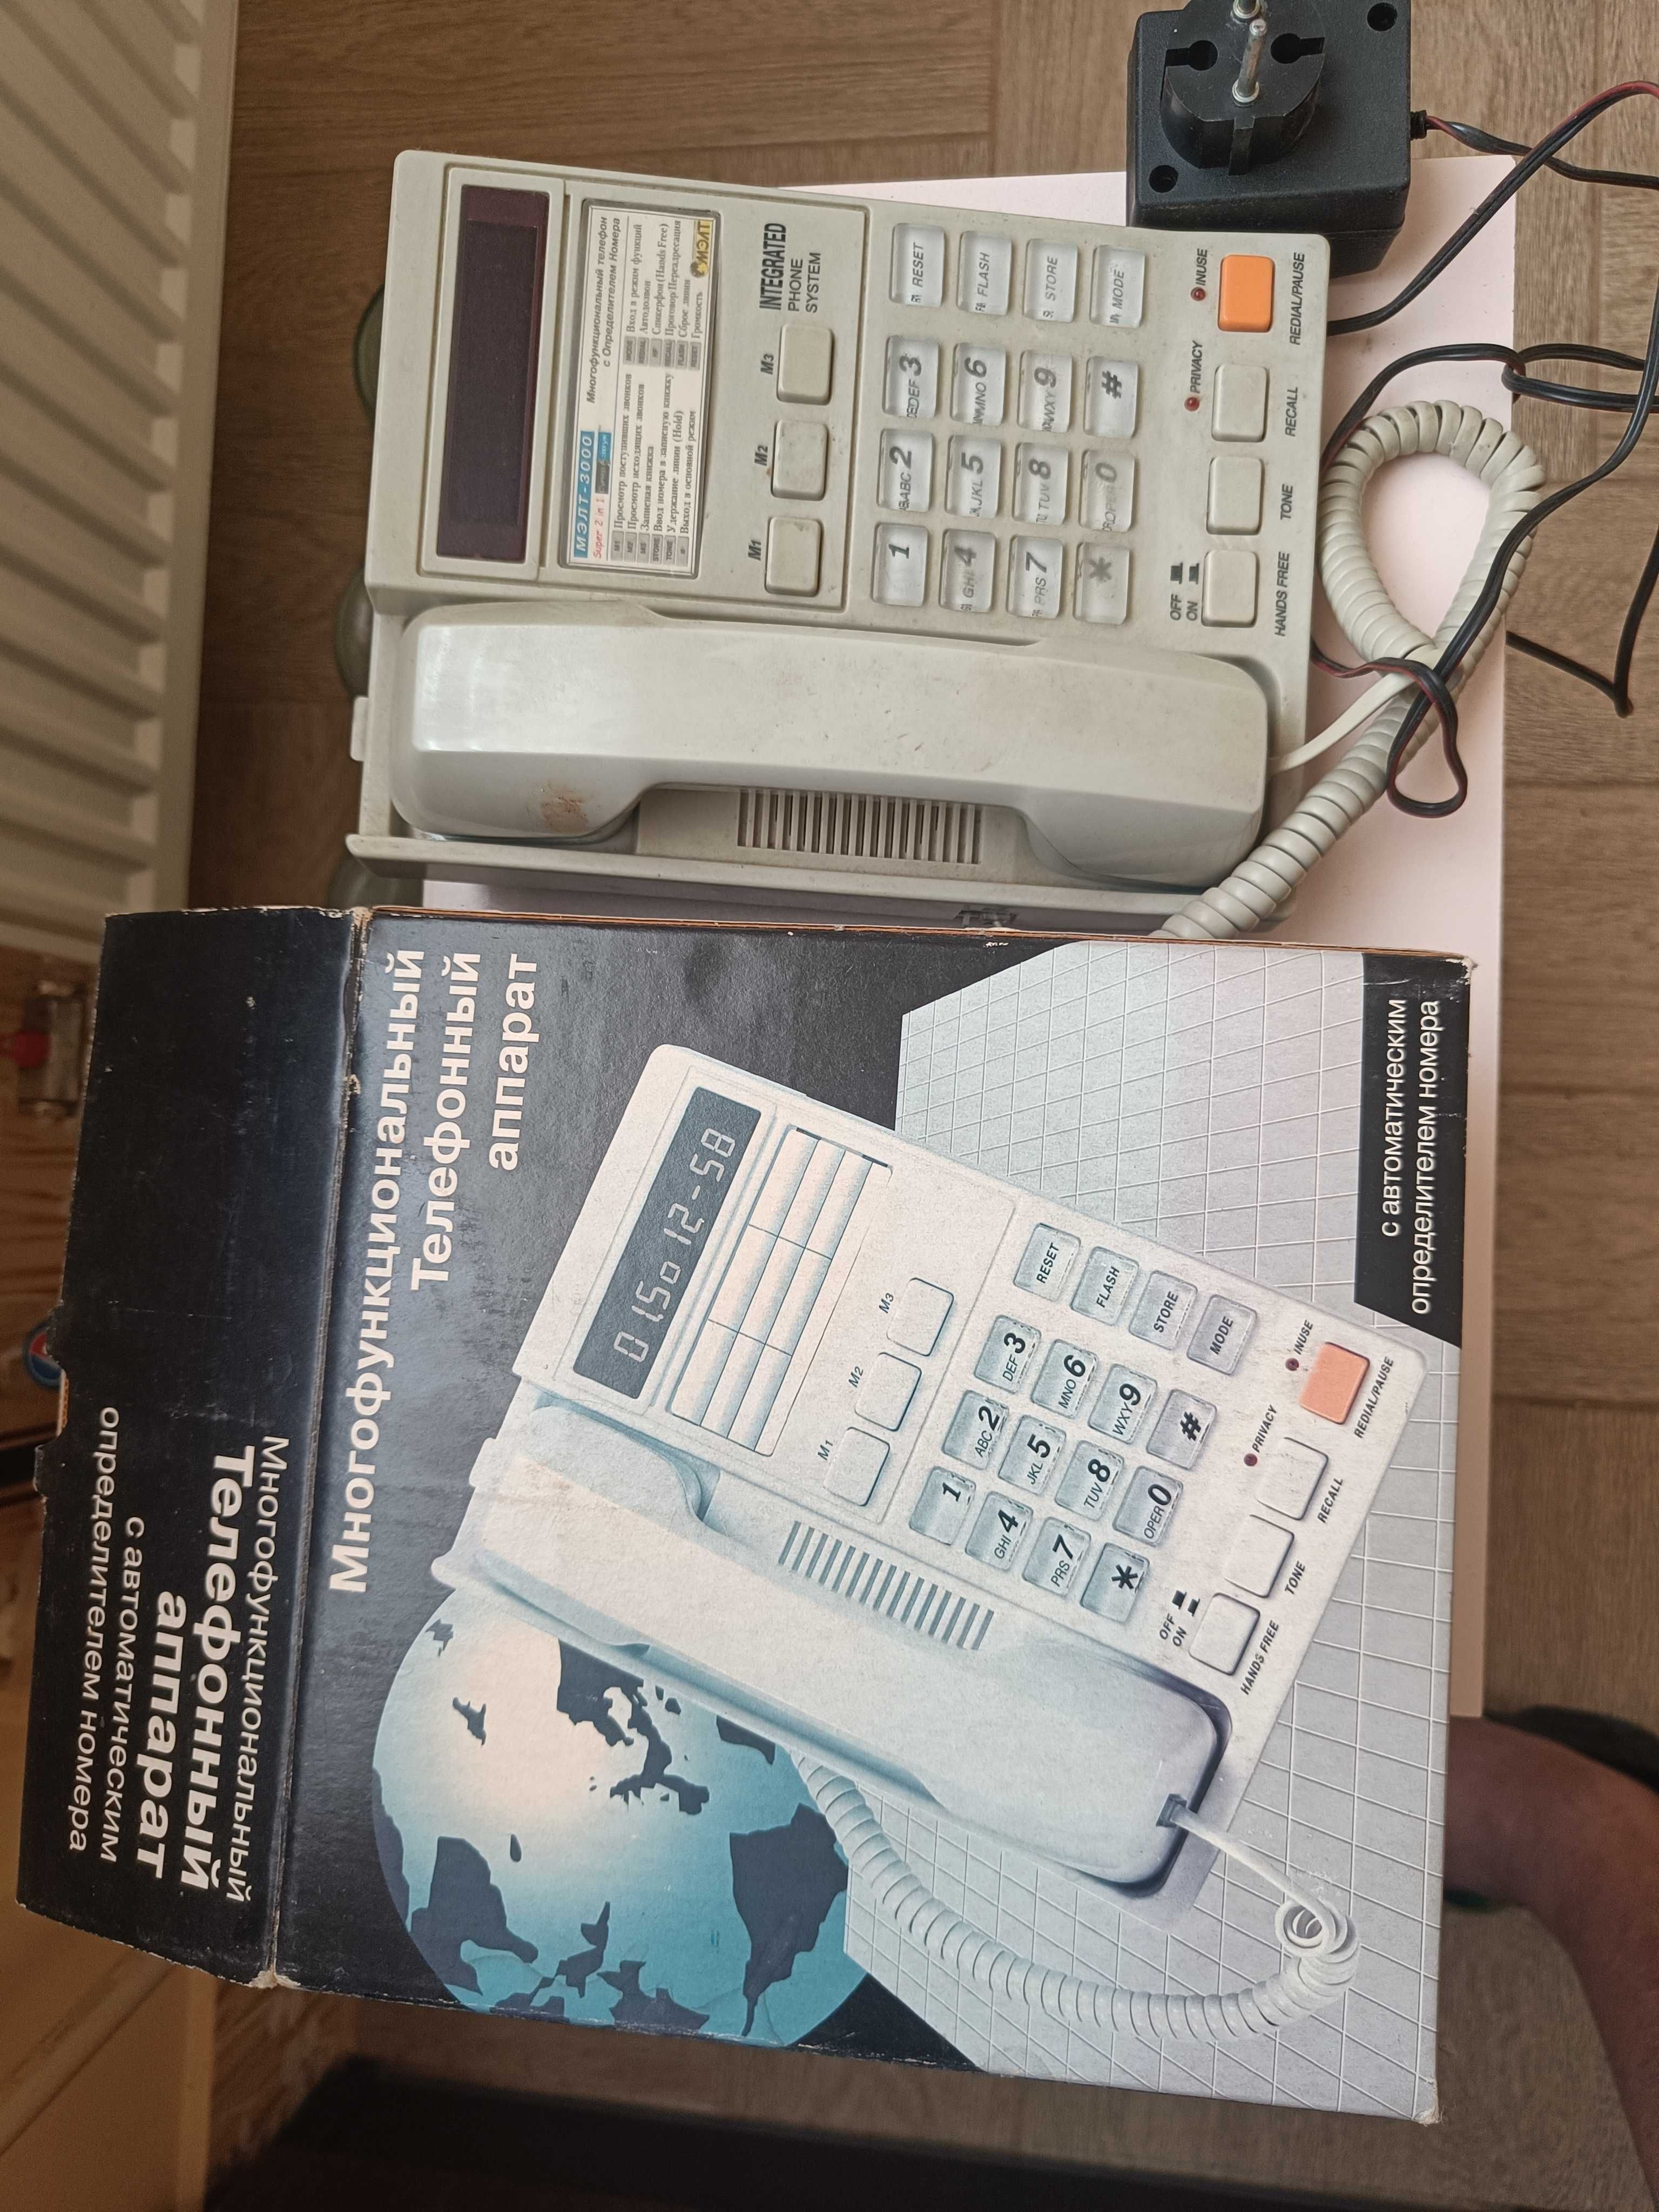 Багатофункційний телефонний апарат  МЭЛТ-3000 та SONY